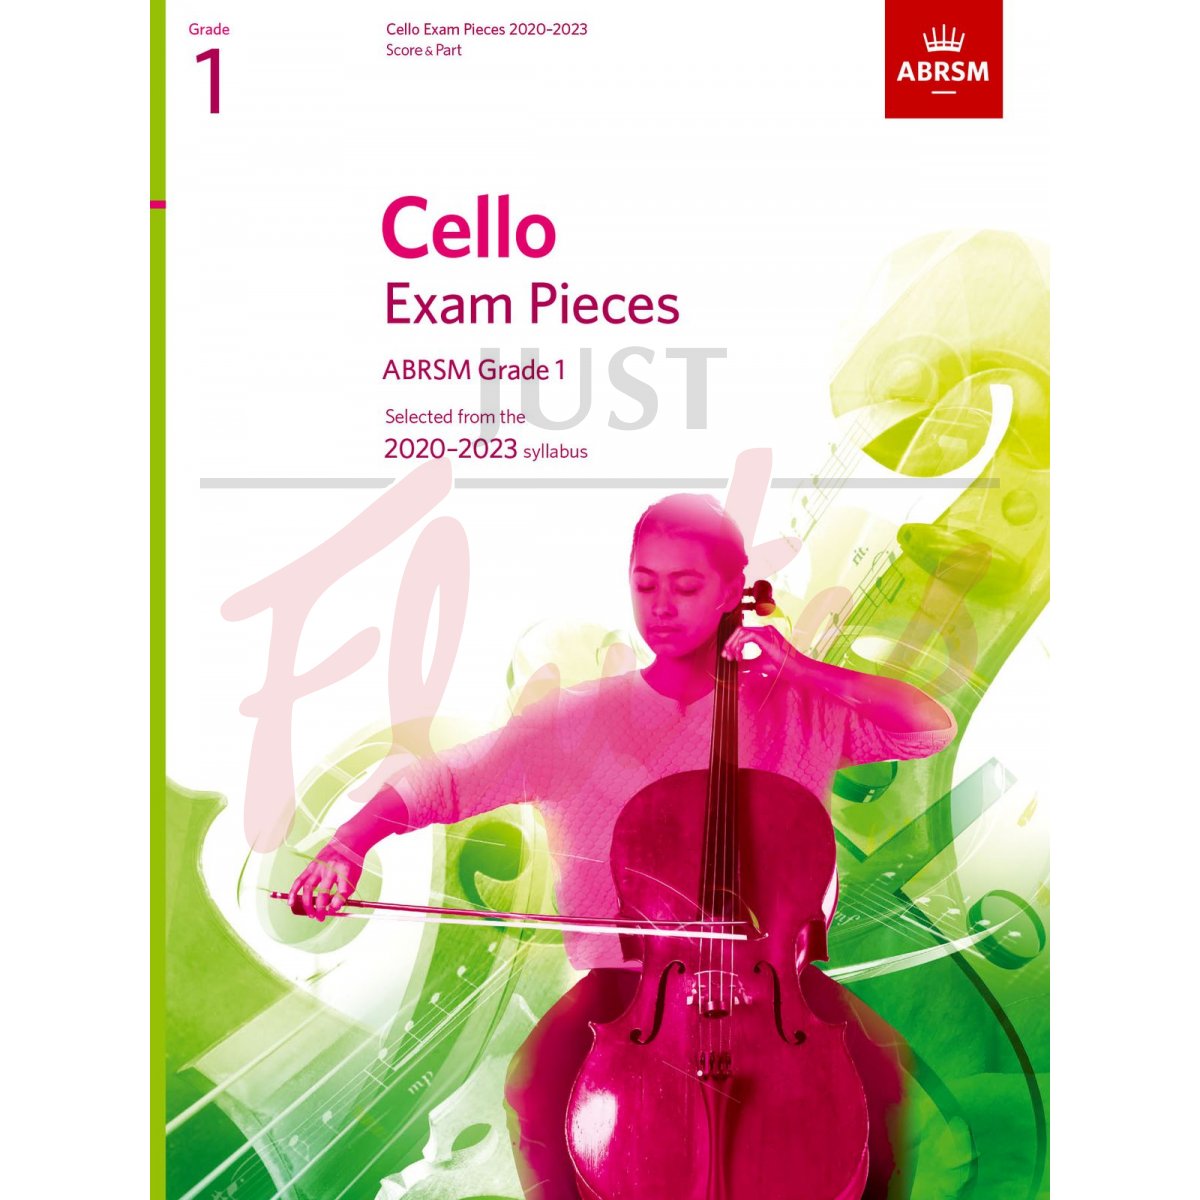 Cello Exam Pieces 2020-2023, Grade 1 